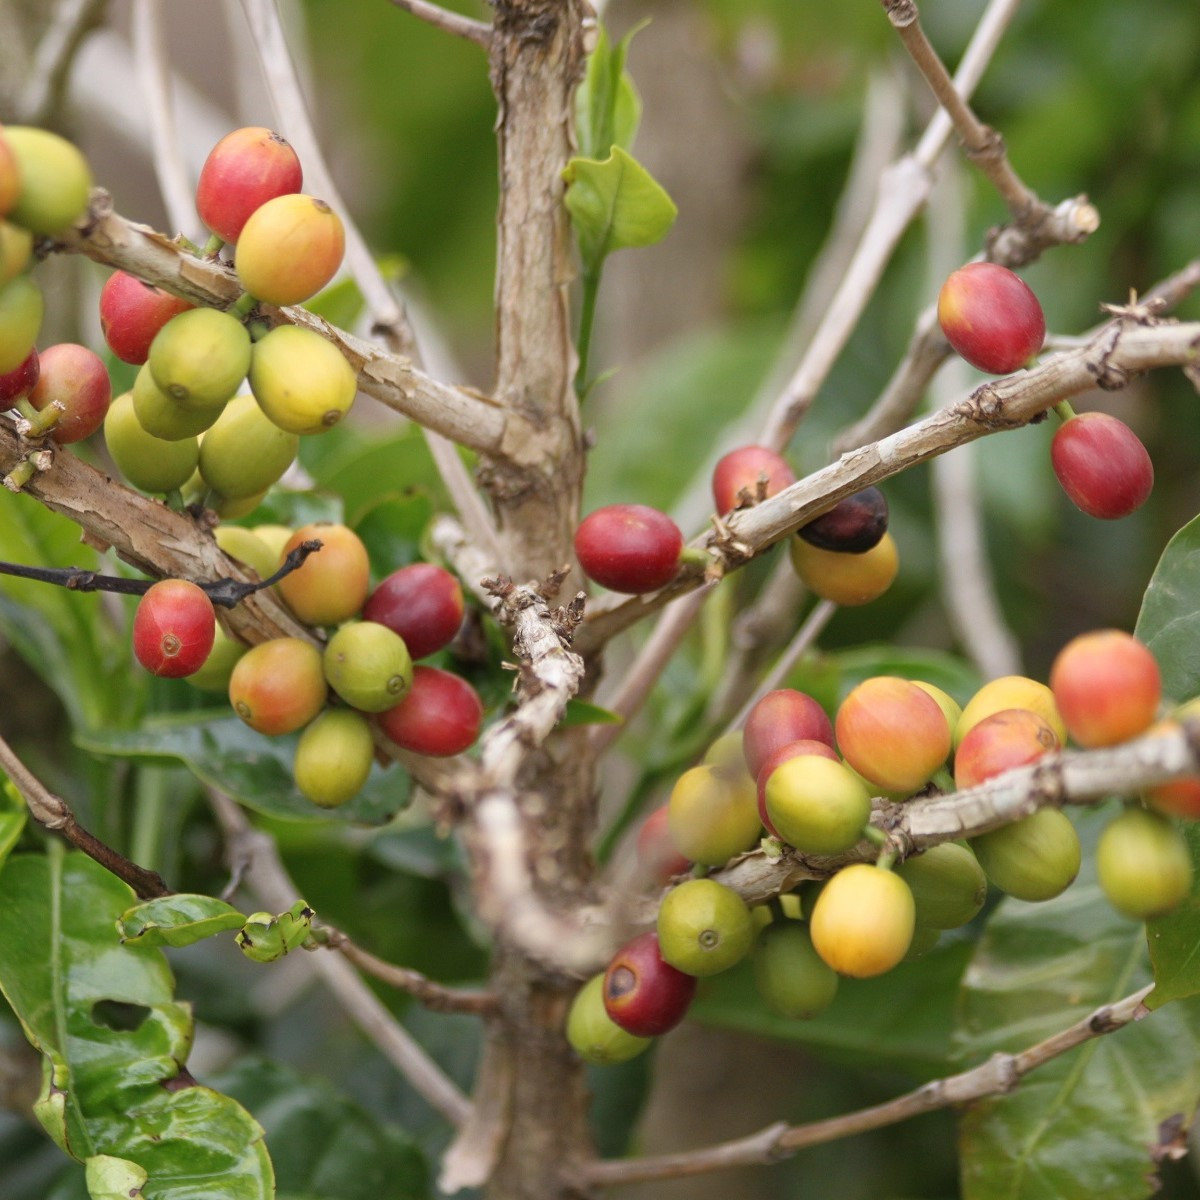 Kávovník arabský Costa Rica 95 - Coffea arabica - semena kávovníku - 5 ks